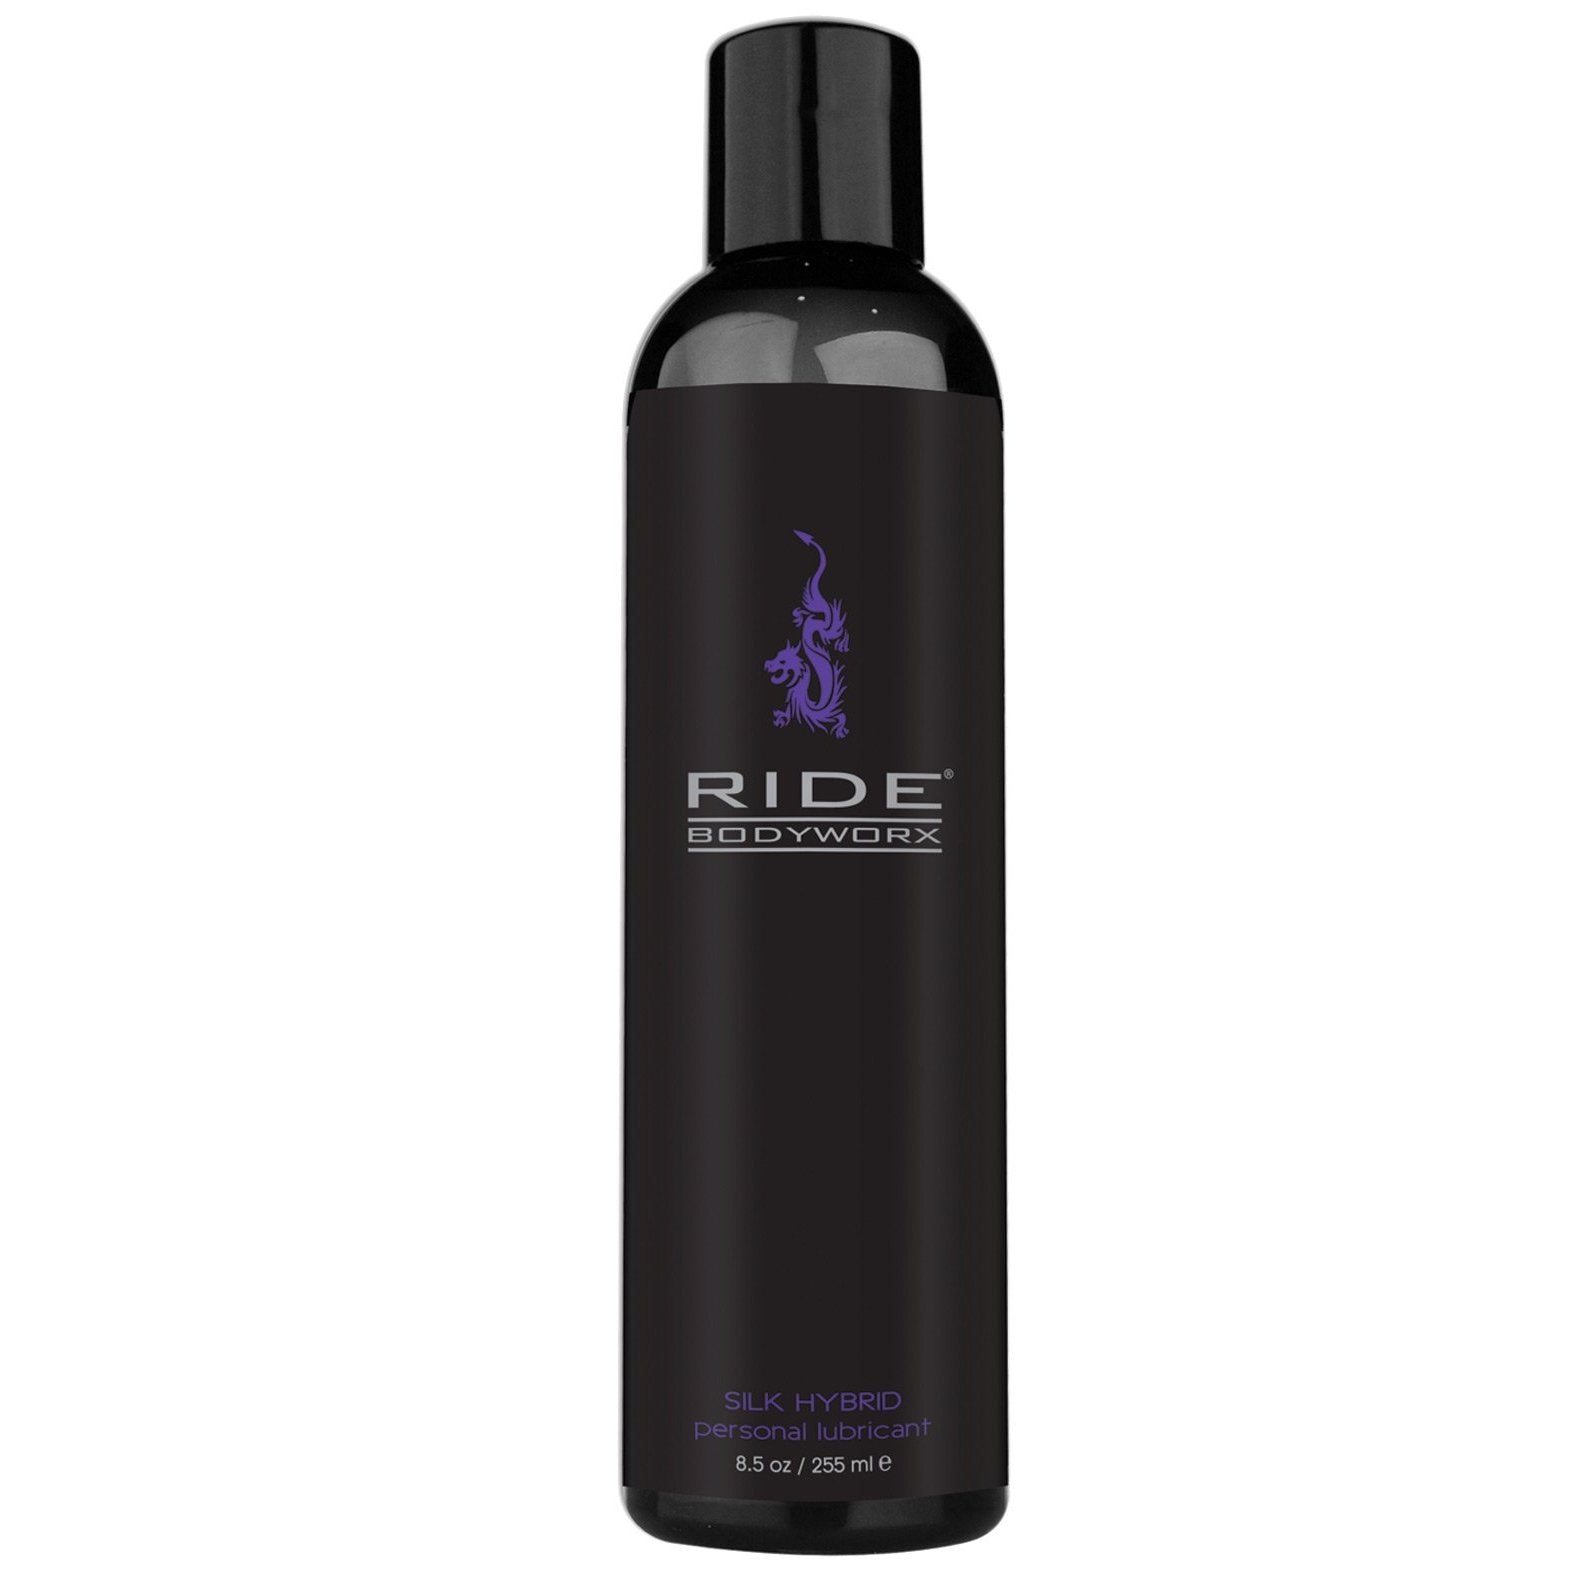 Ride BodyWorx Silk Hybrid Lubricant